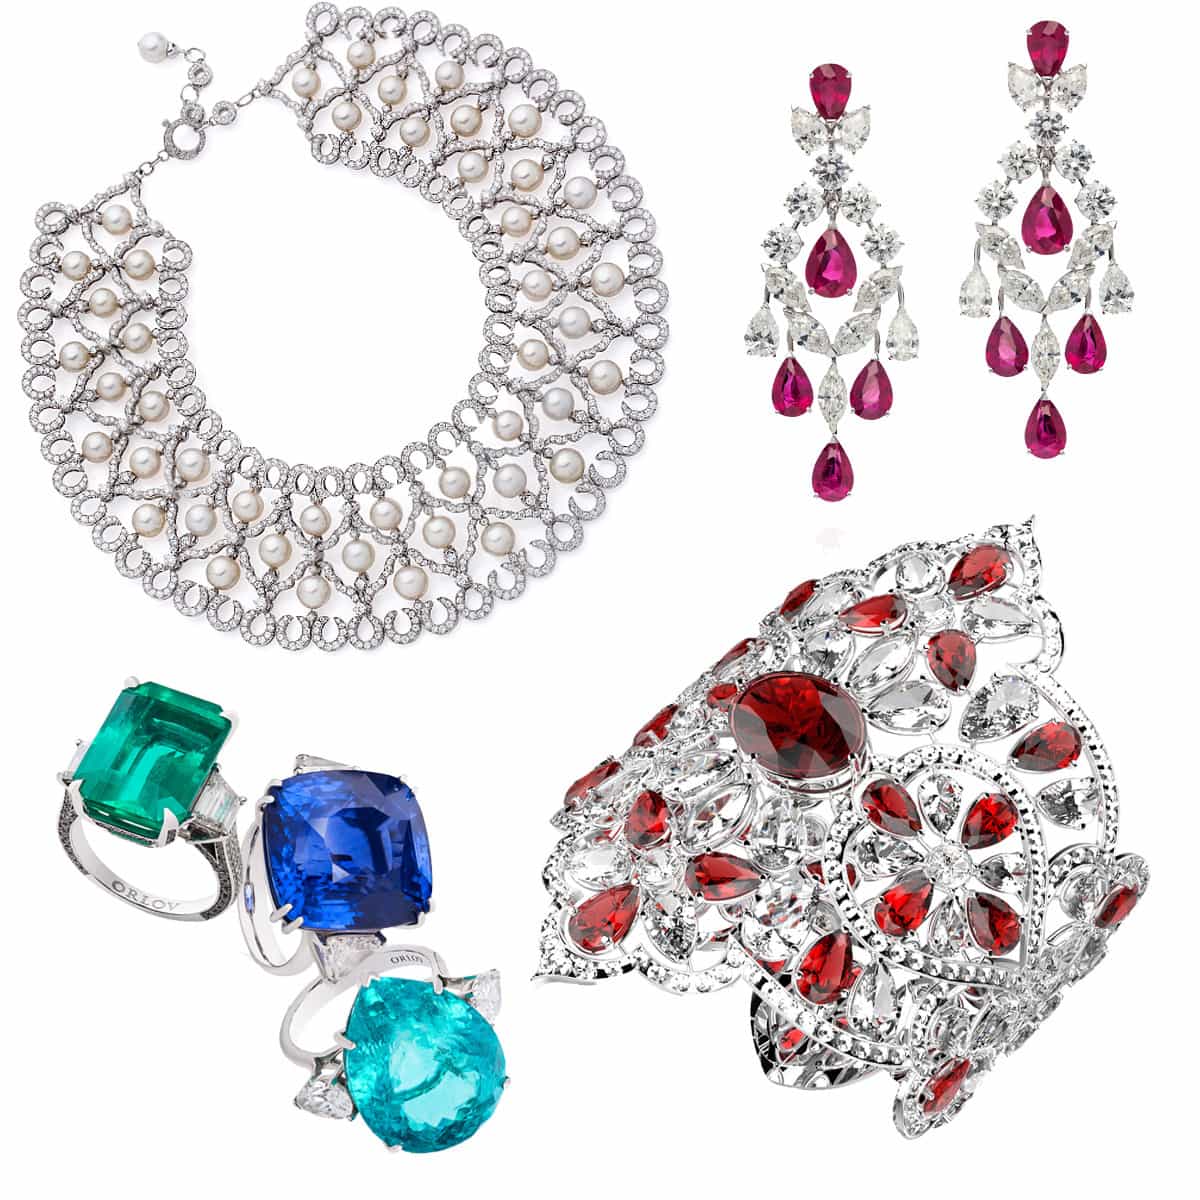 Orlov-A-Precious-Dream-Jewelry-Collection 3